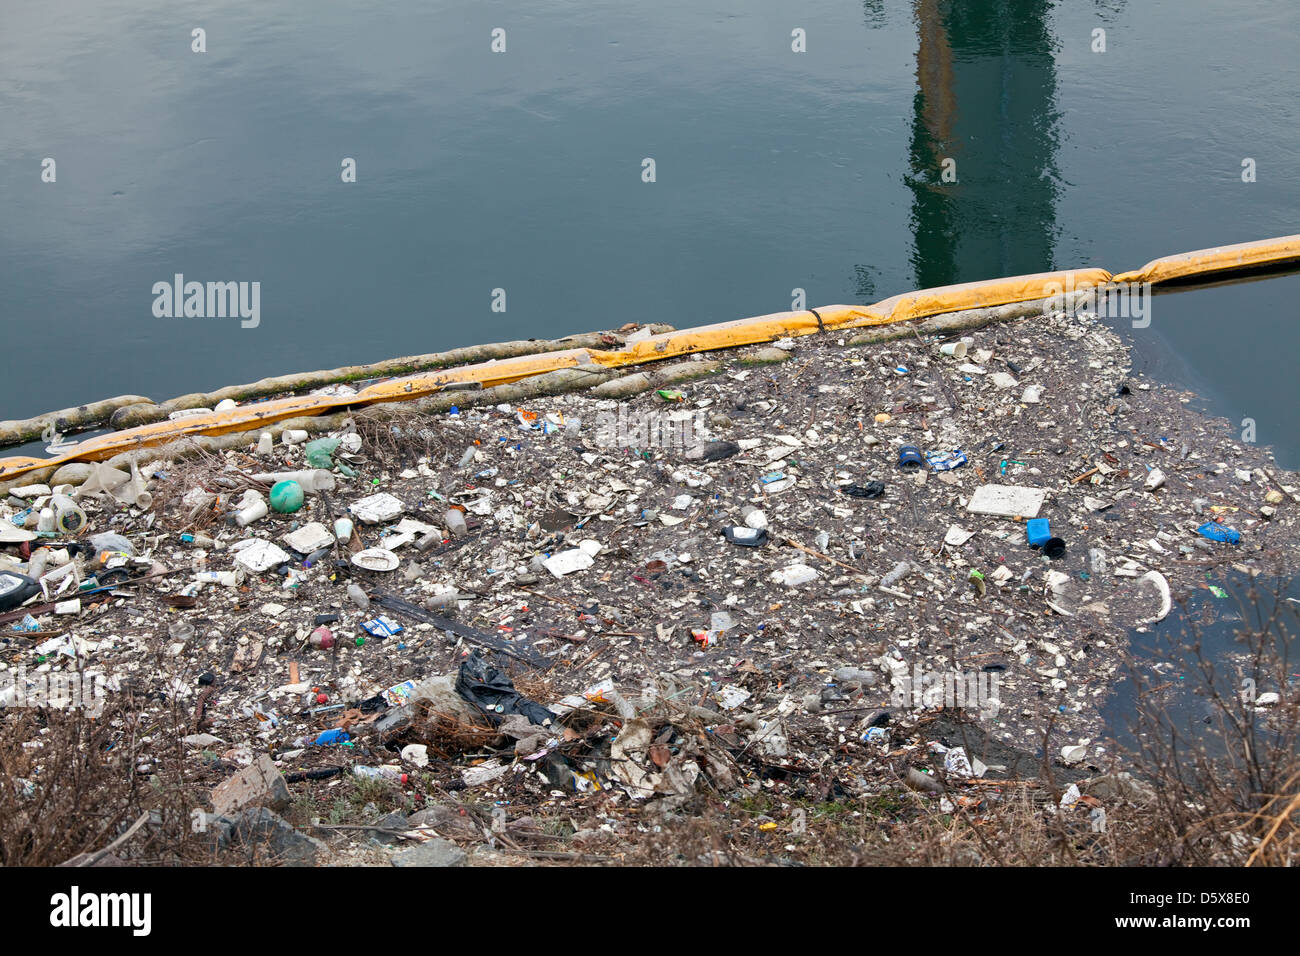 La collecte des déchets de la rampe et la corbeille dans le ruissellement urbain. Dominguez Channel, un 15,7 km ruisseau qui draine le bassin versant Dominguez Banque D'Images